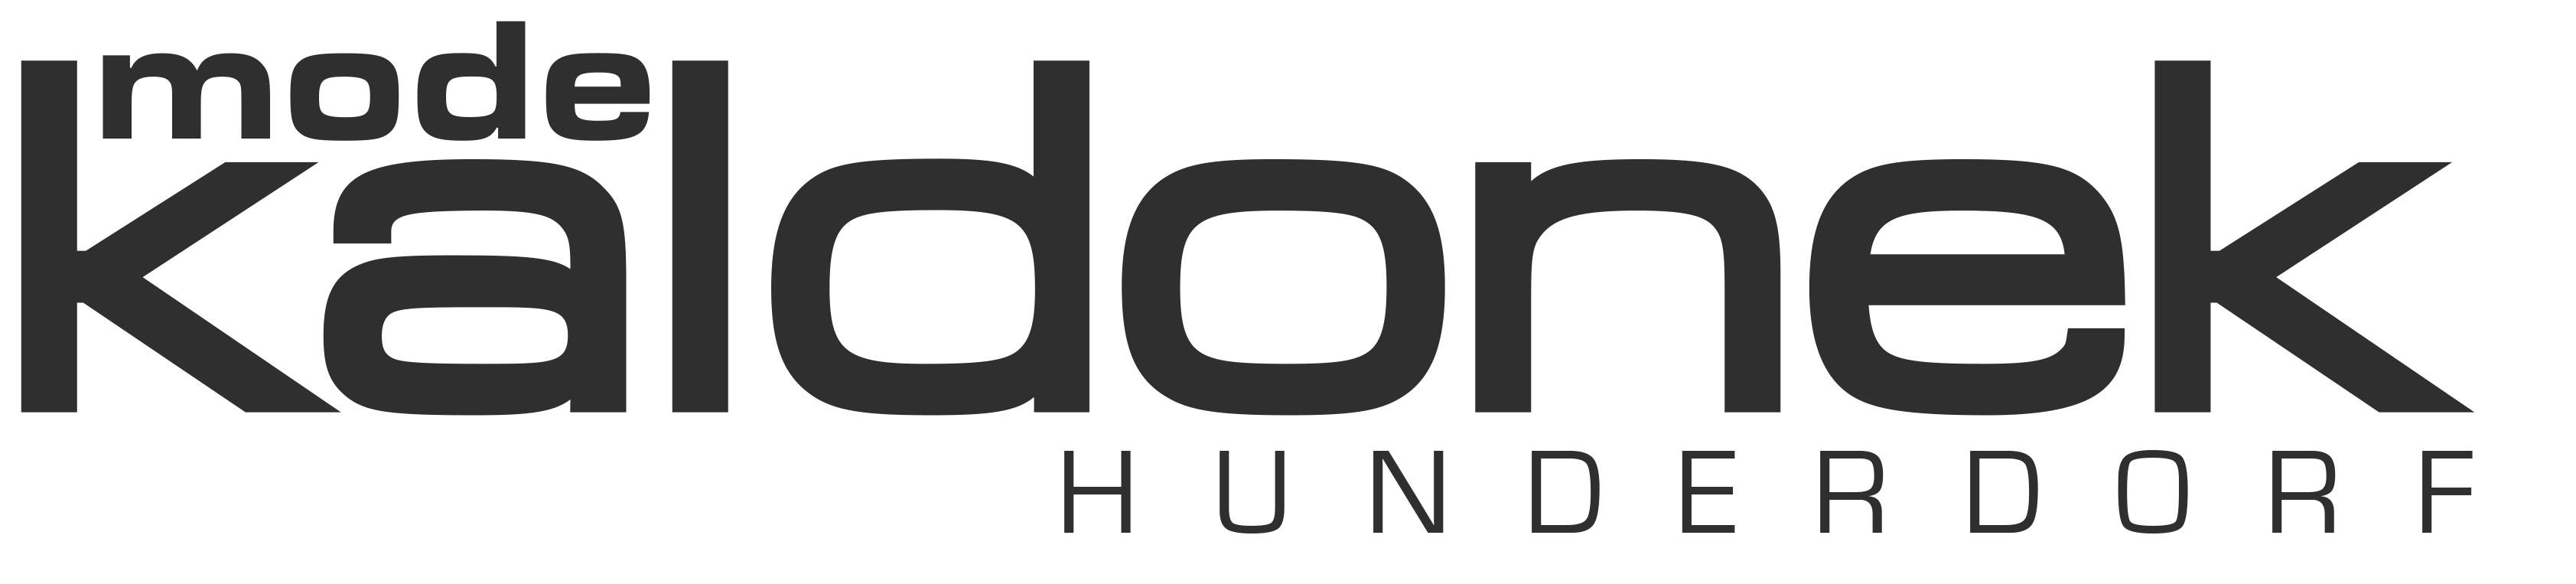 Logo der Firma Kaldonek.
In der Mitte der Schriftzug Kaldonek, oben links zwischen dem K und dem L das Wort Mode. Rechts unten das Wort Hunderdorf.
Die Schrift ist schwarz auf weissem Grund.